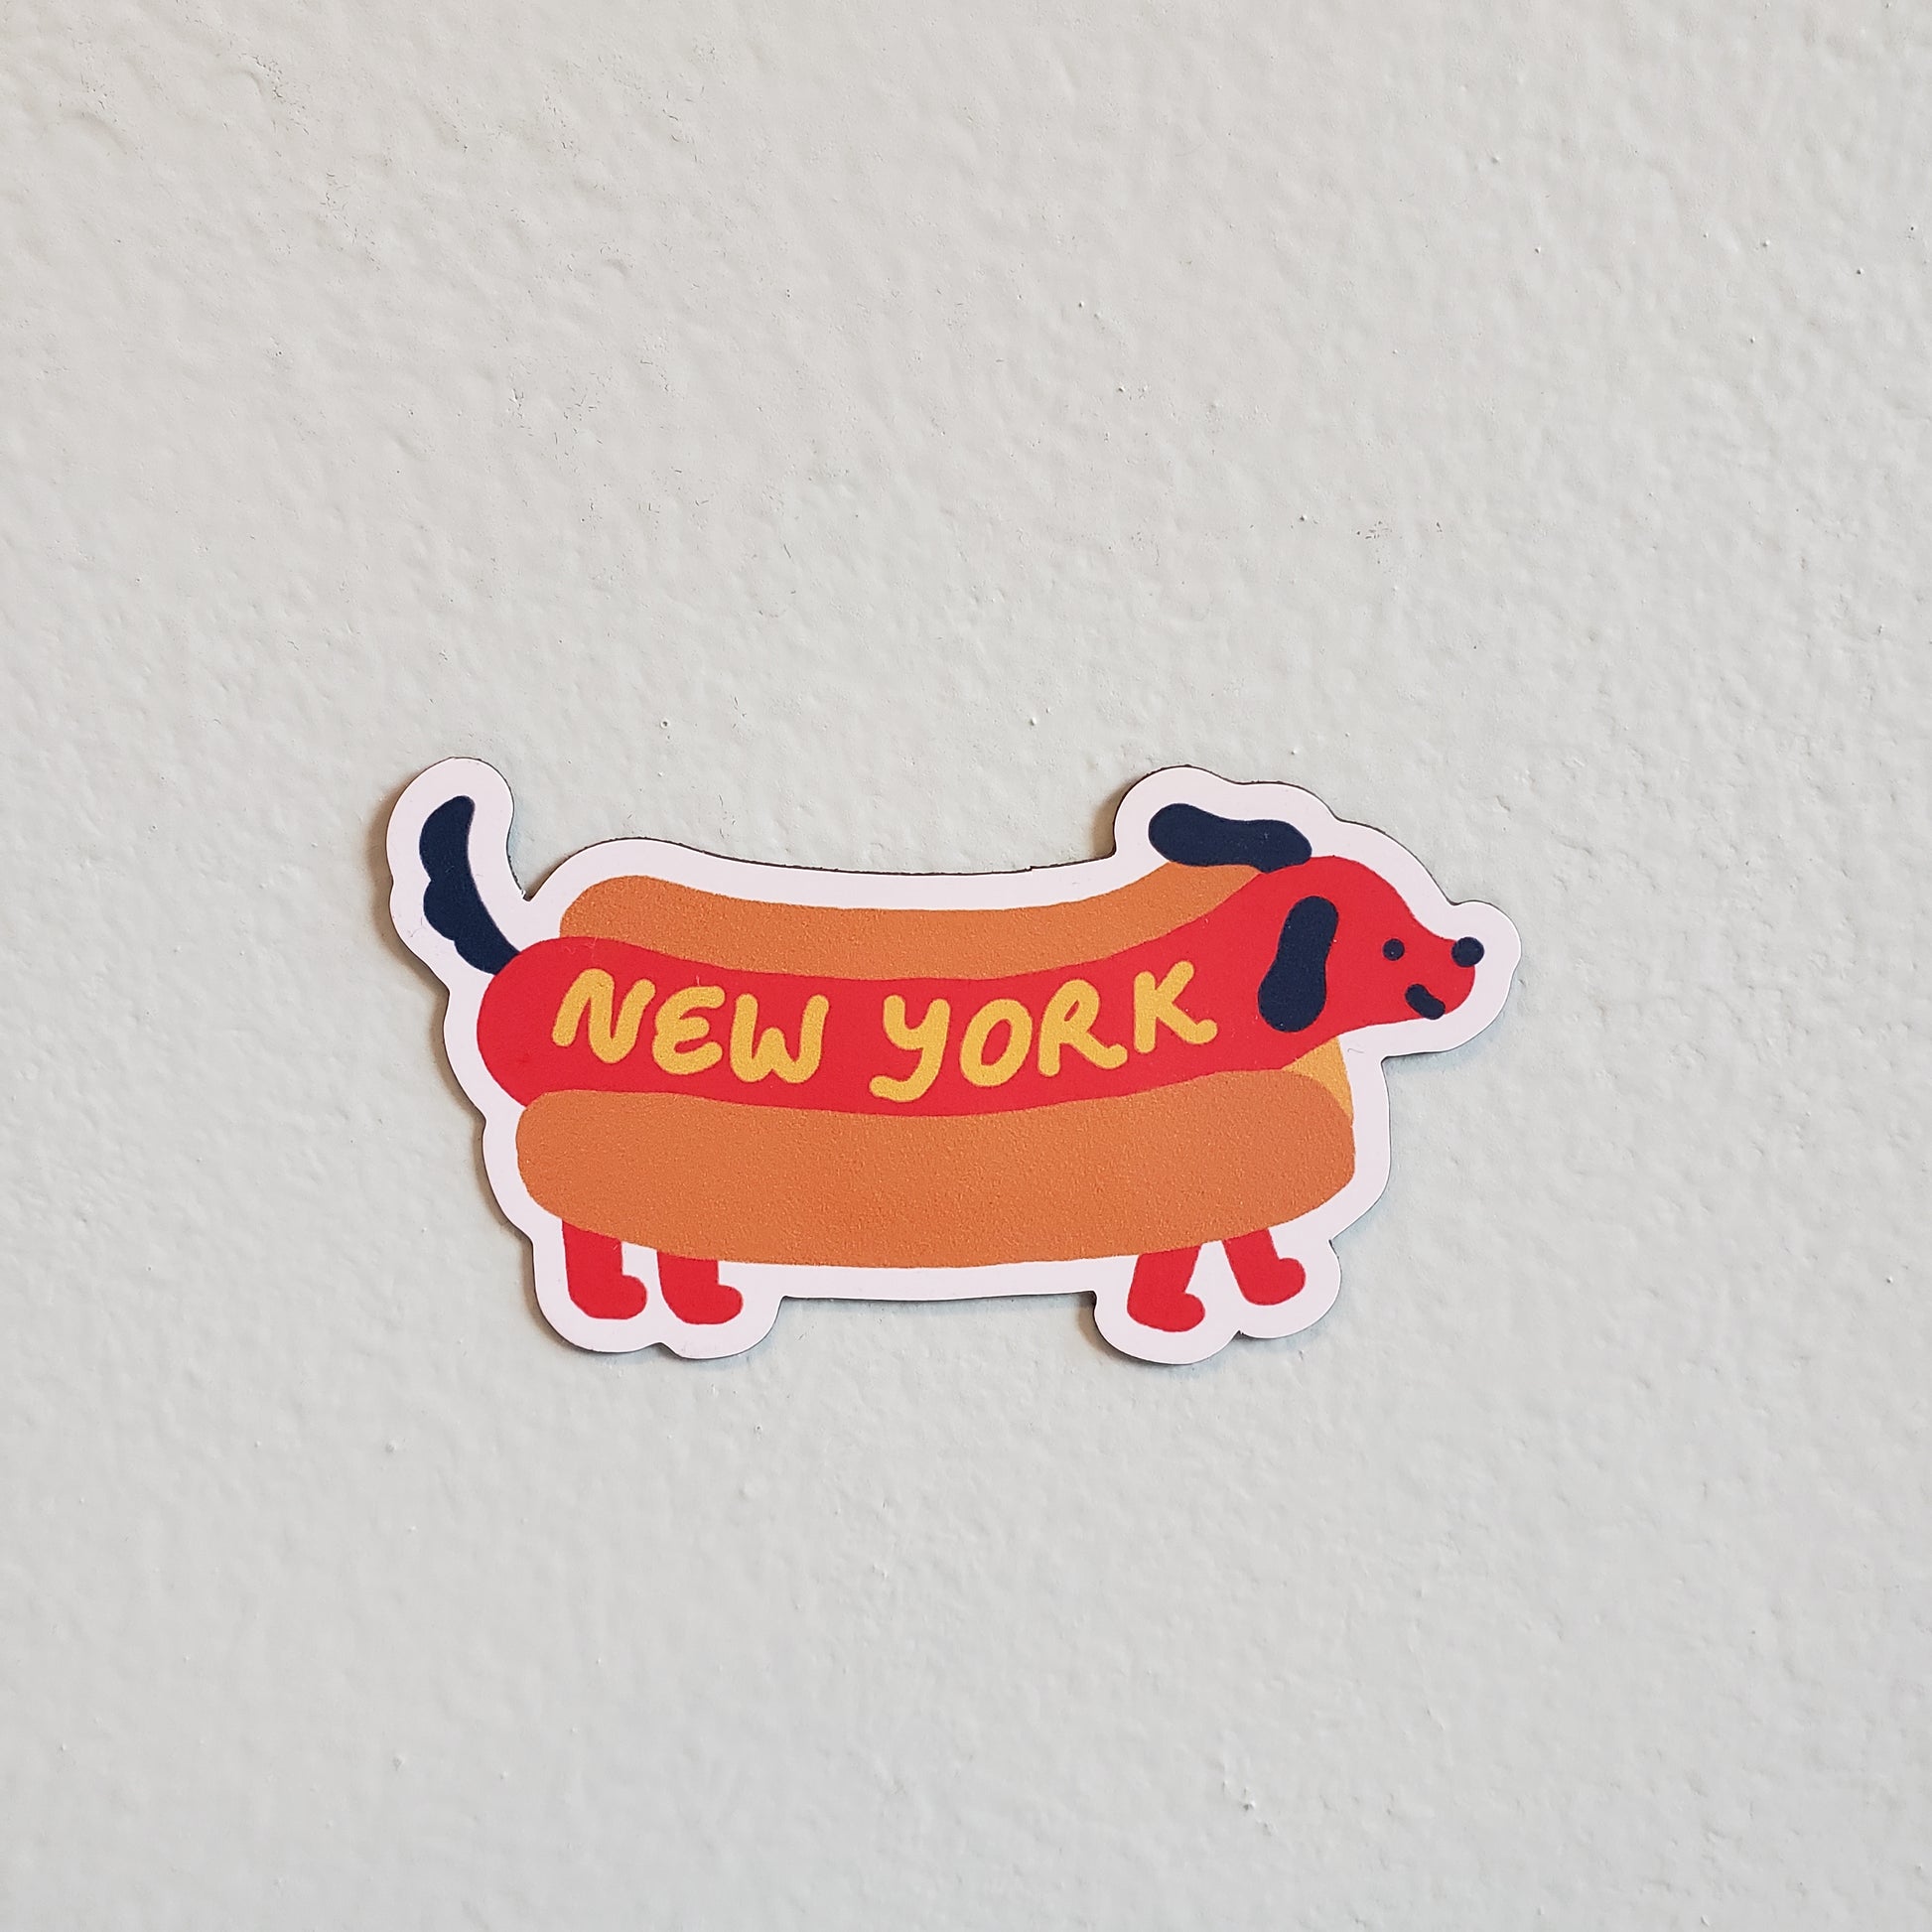 K. N. Yamazaki: New York Stickers – From Here to Sunday